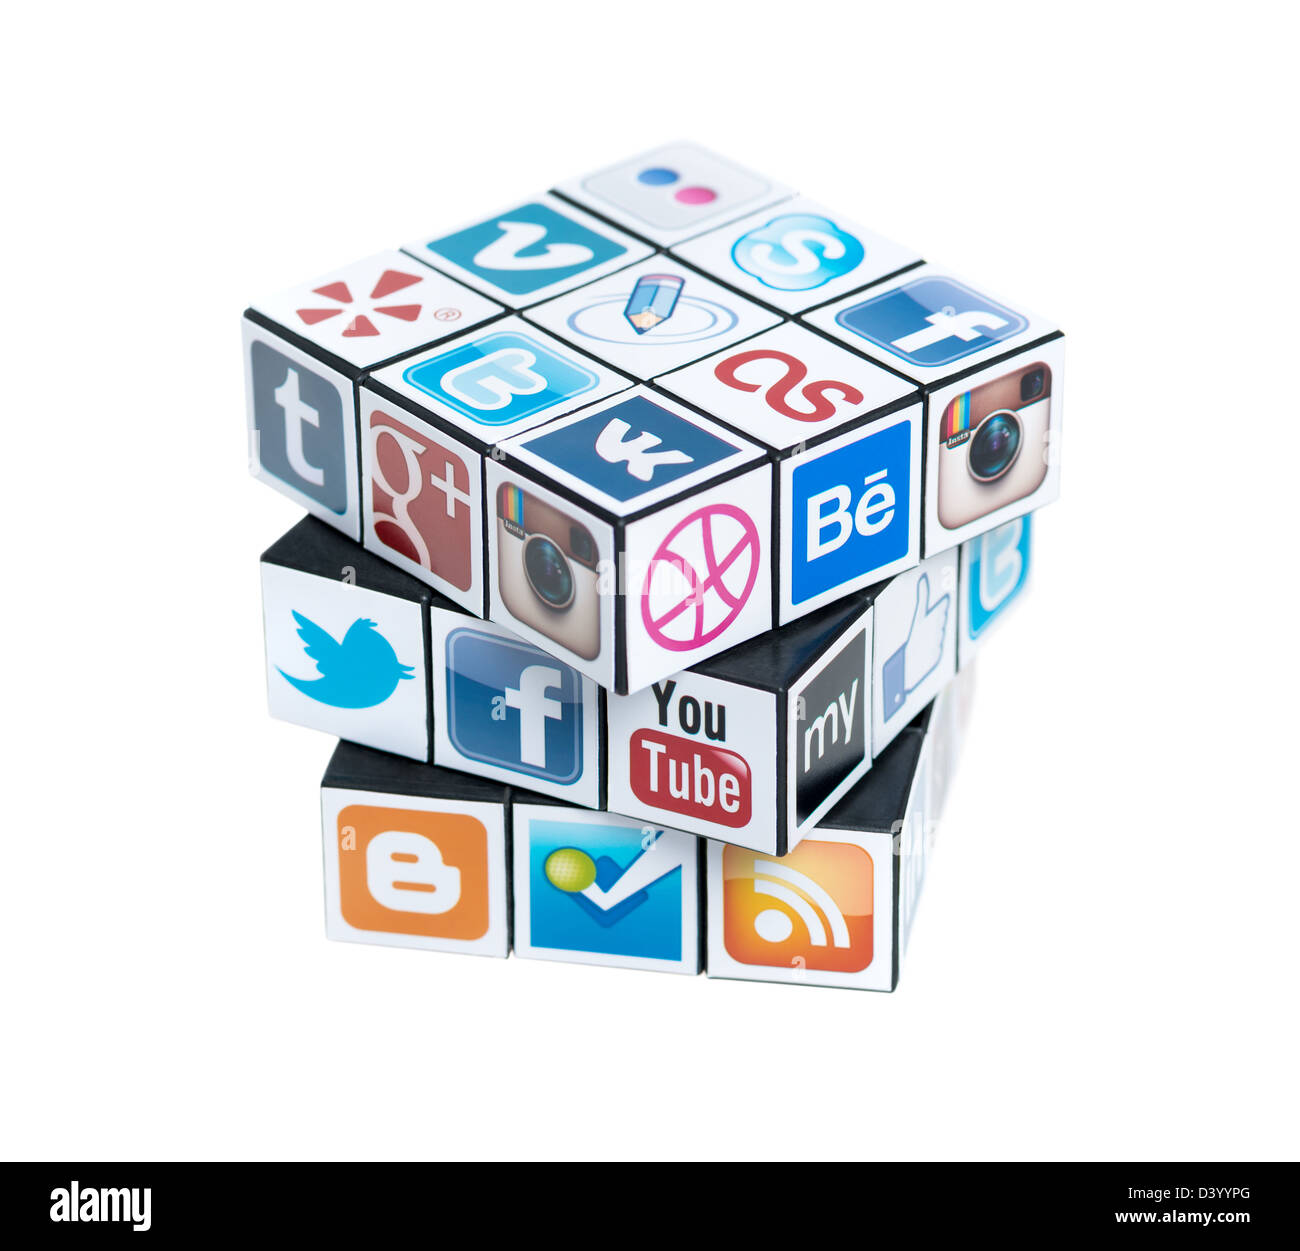 Un rubik's cube avec des logos de marque, médias sociaux. Banque D'Images